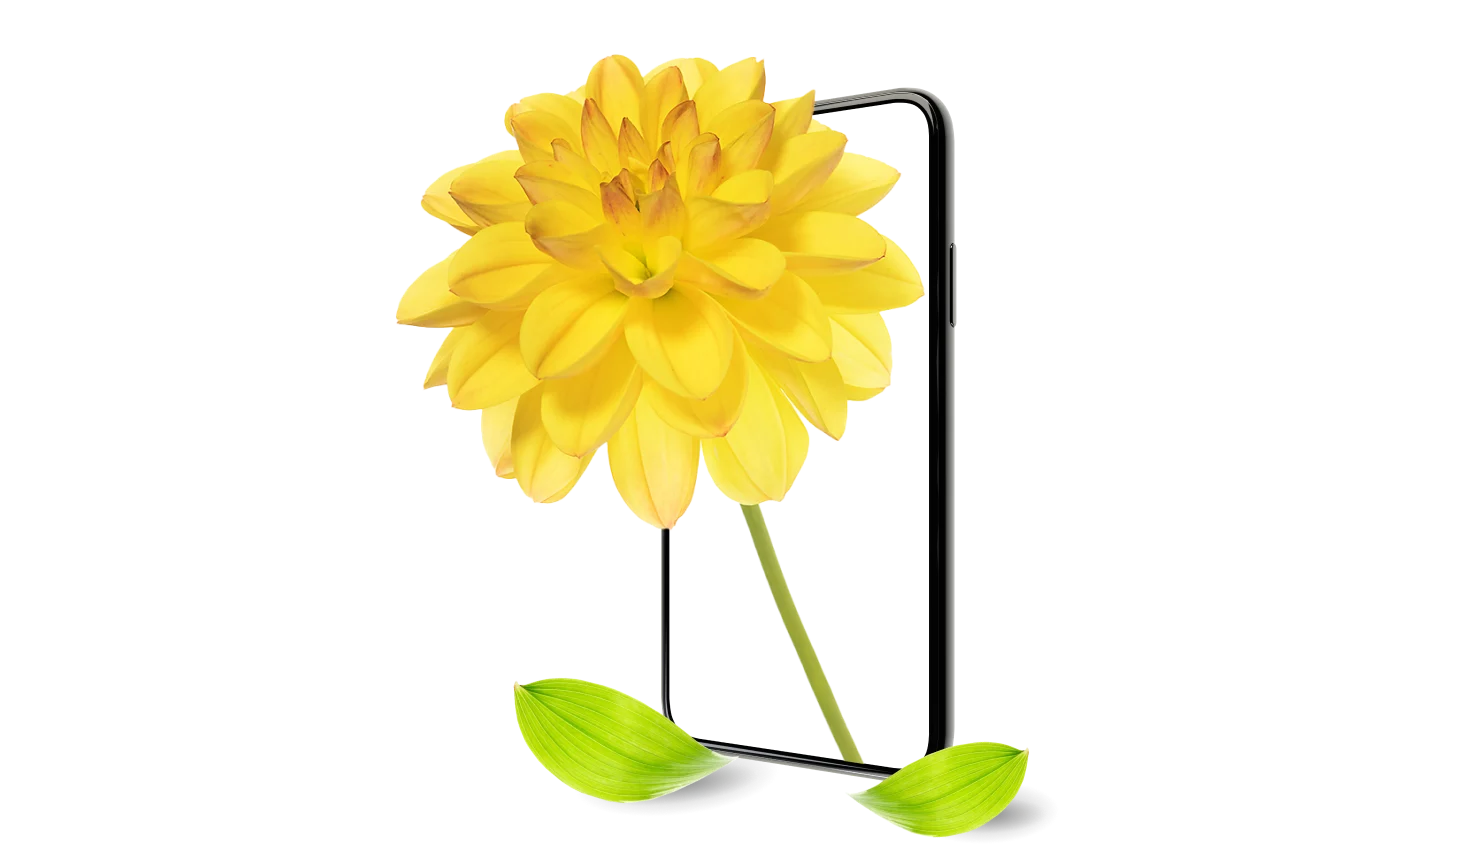 Le cadre d’un téléphone intelligent avec deux feuilles vertes éclatantes mettent en valeur un dahlia jaune en pleine floraison.